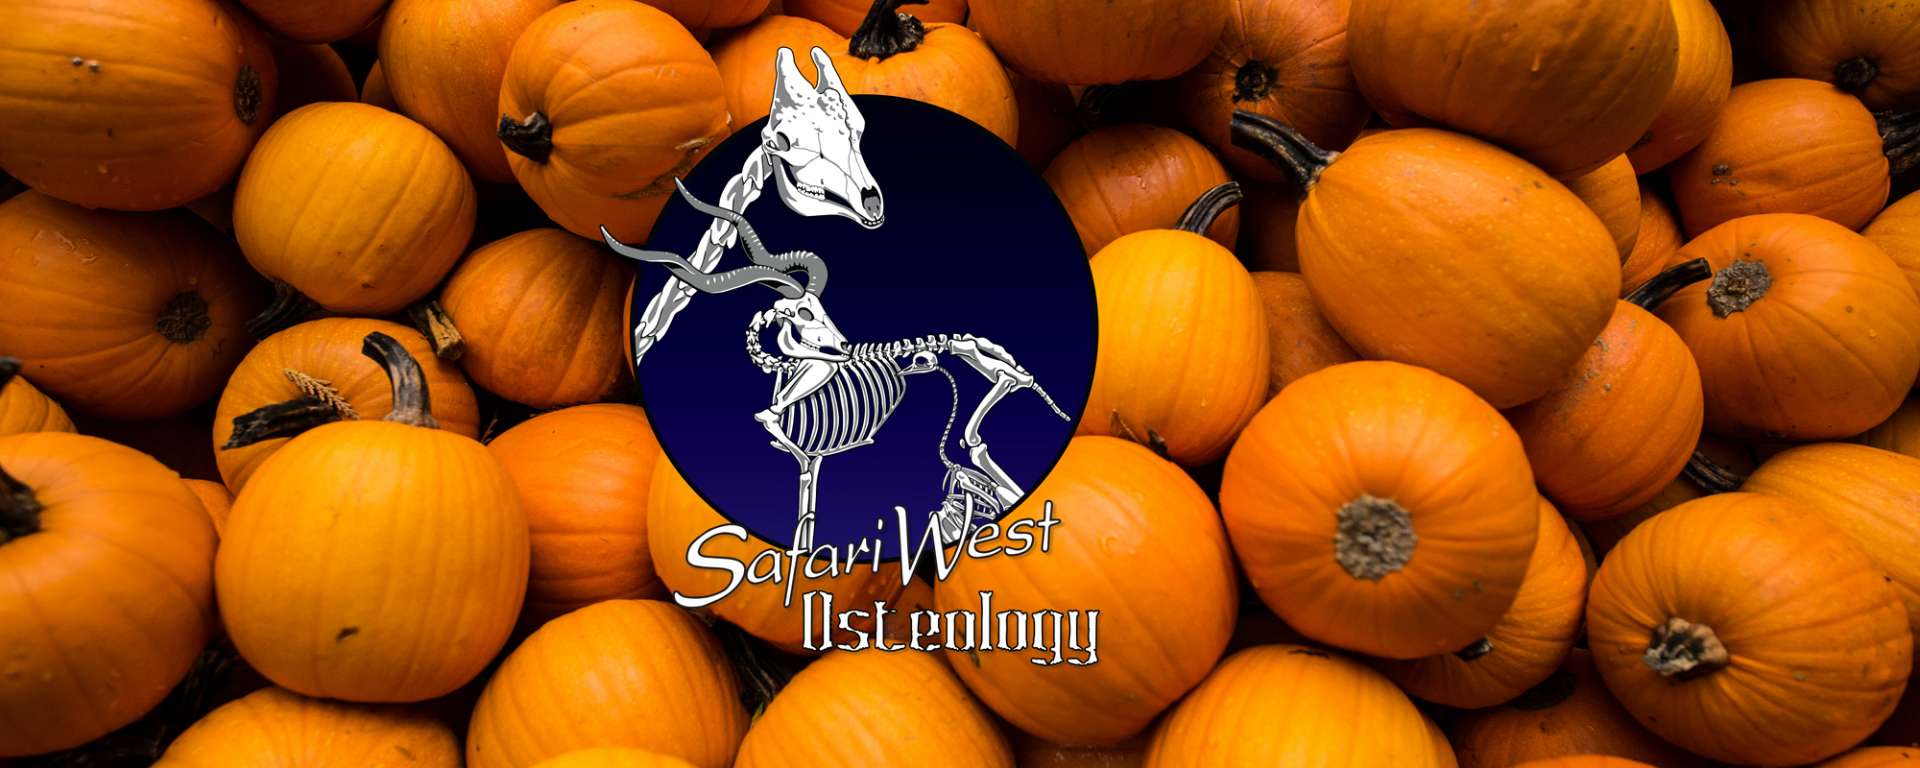 Halloweekend halloween, bones and pumpkins